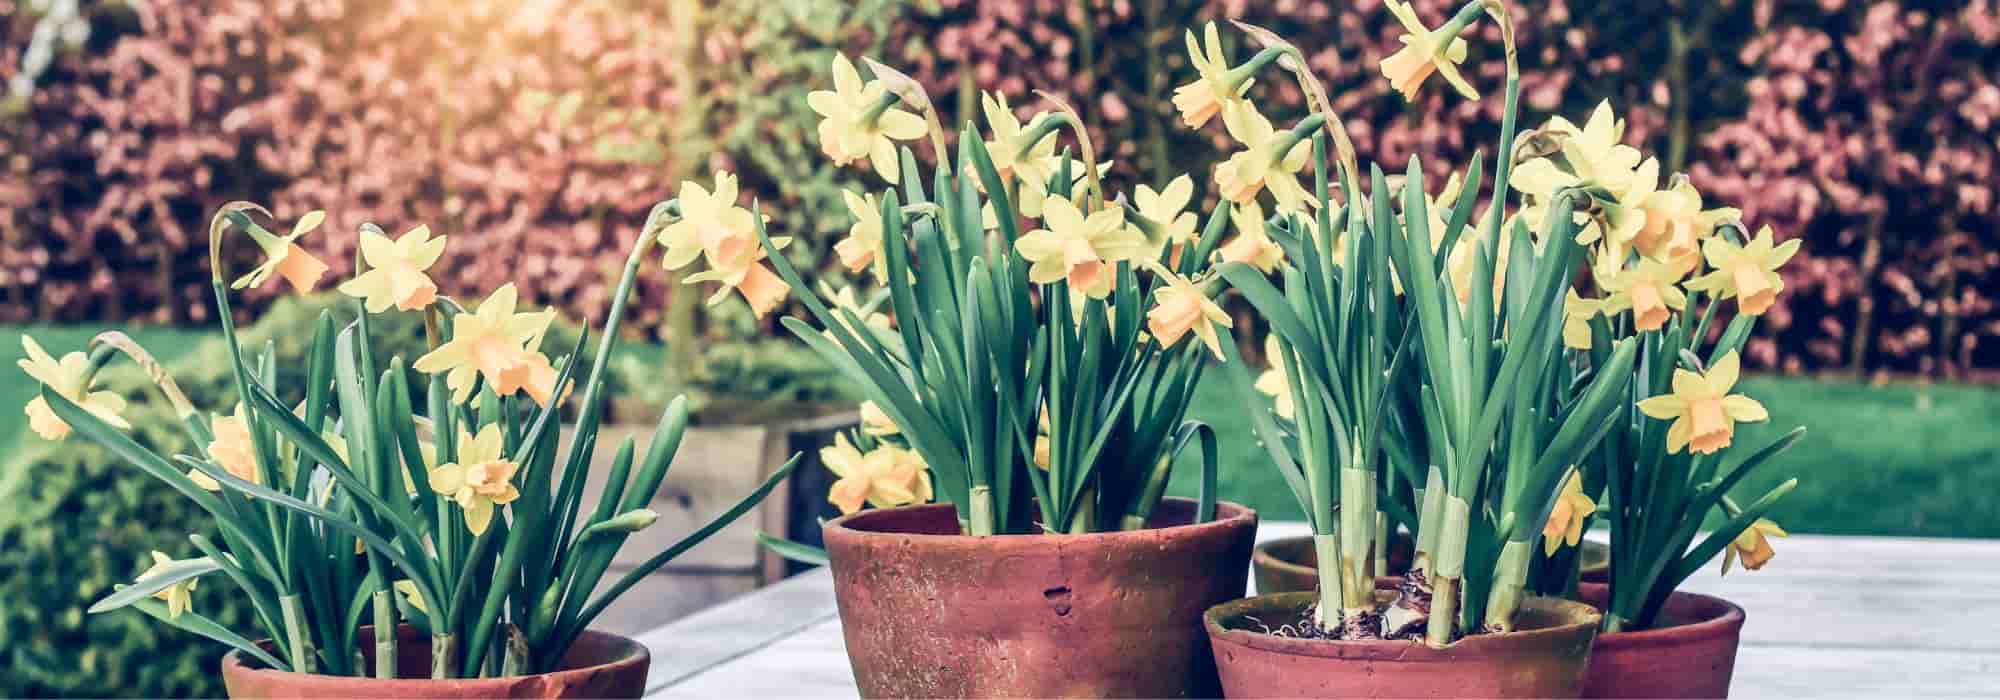 Planter et entretenir des bulbes de narcisses en pot